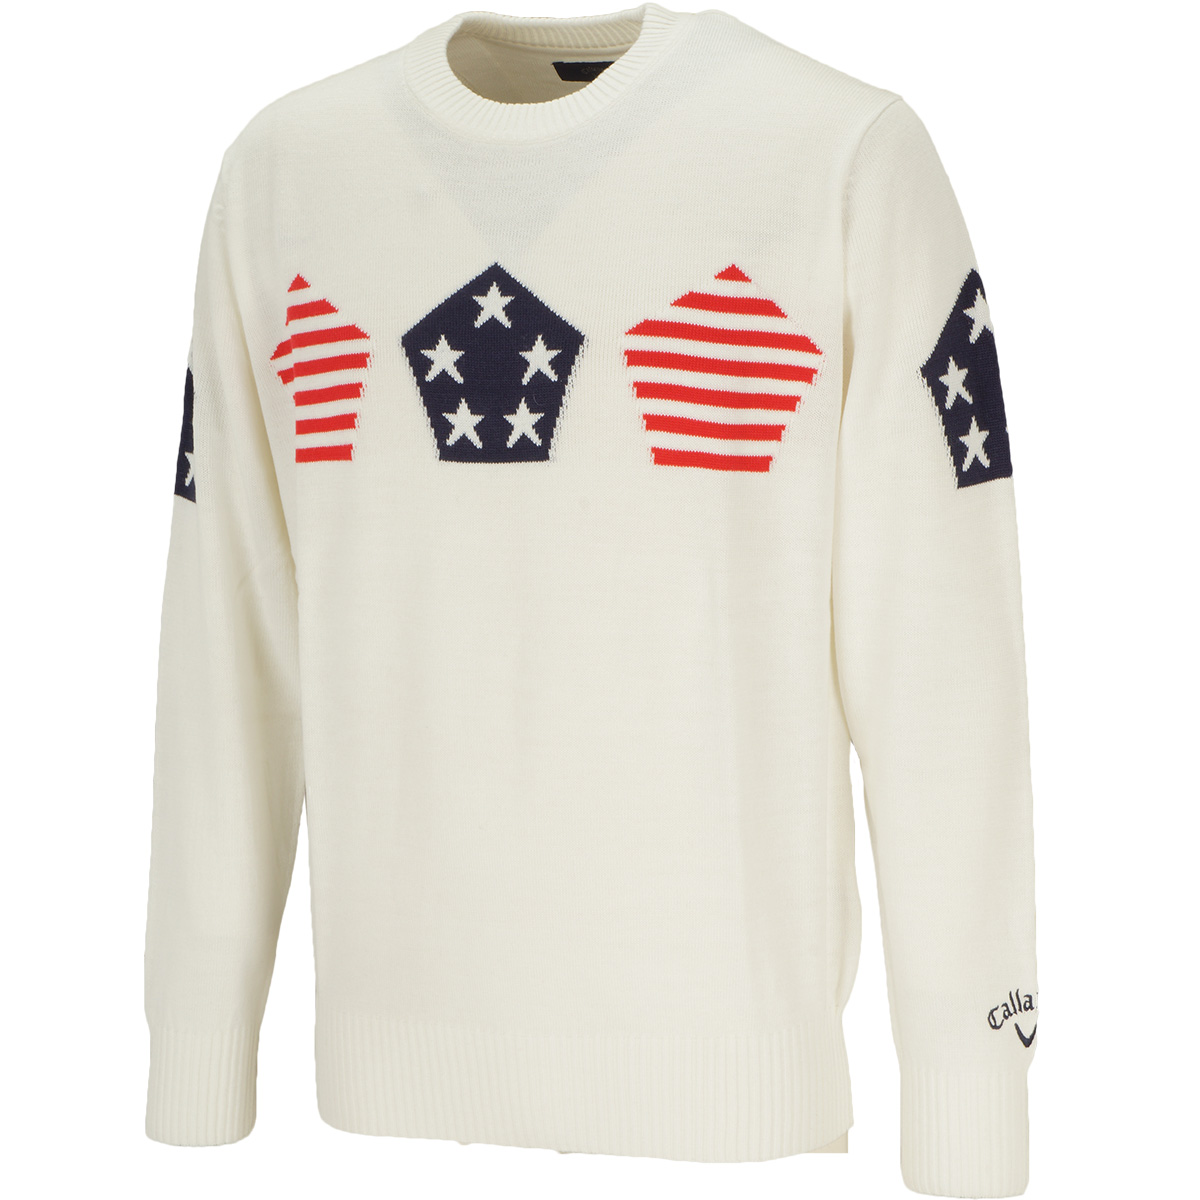  アメリカ柄クルーネックセーター 